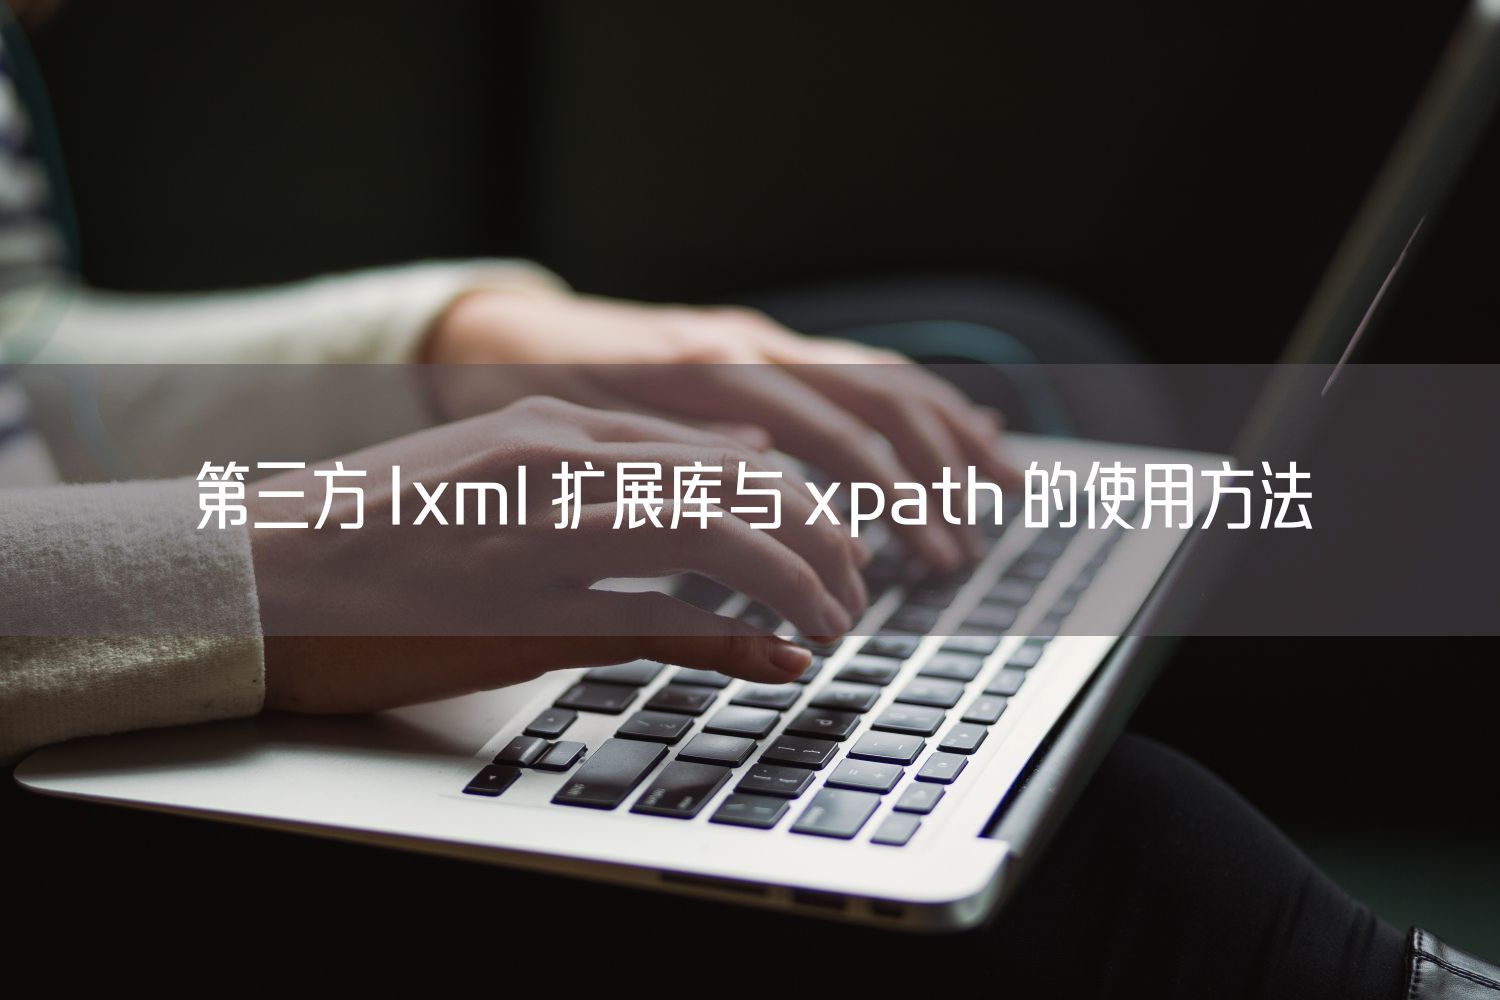 第三方 lxml 扩展库与 xpath 的使用方法